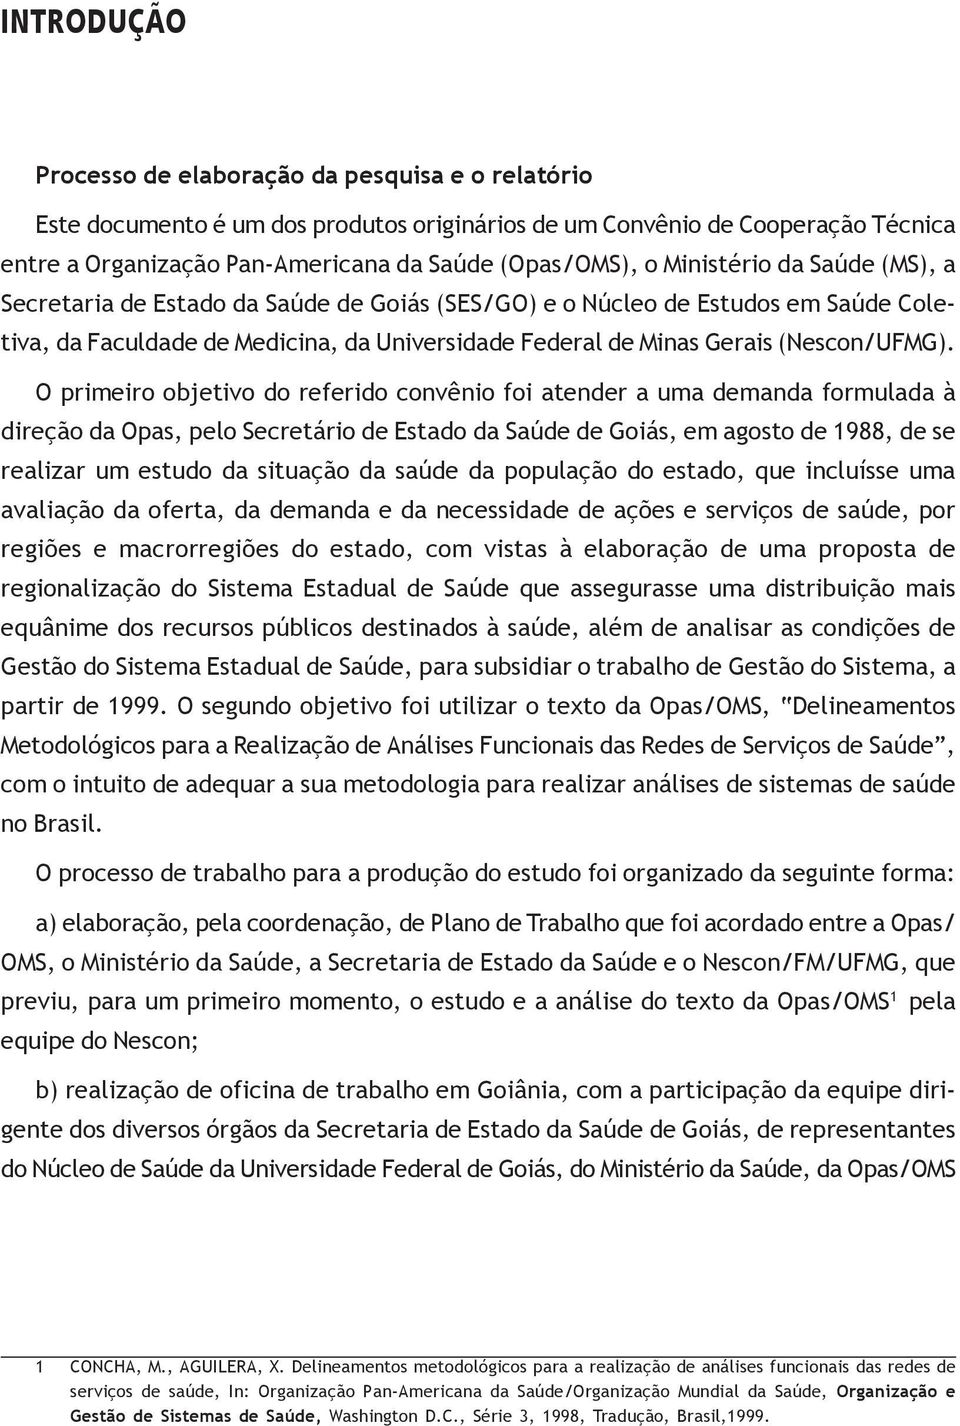 O primeiro objetivo do referido convênio foi atender a uma demanda formulada à direção da Opas, pelo Secretário de Estado da Saúde de Goiás, em agosto de 1988, de se realizar um estudo da situação da